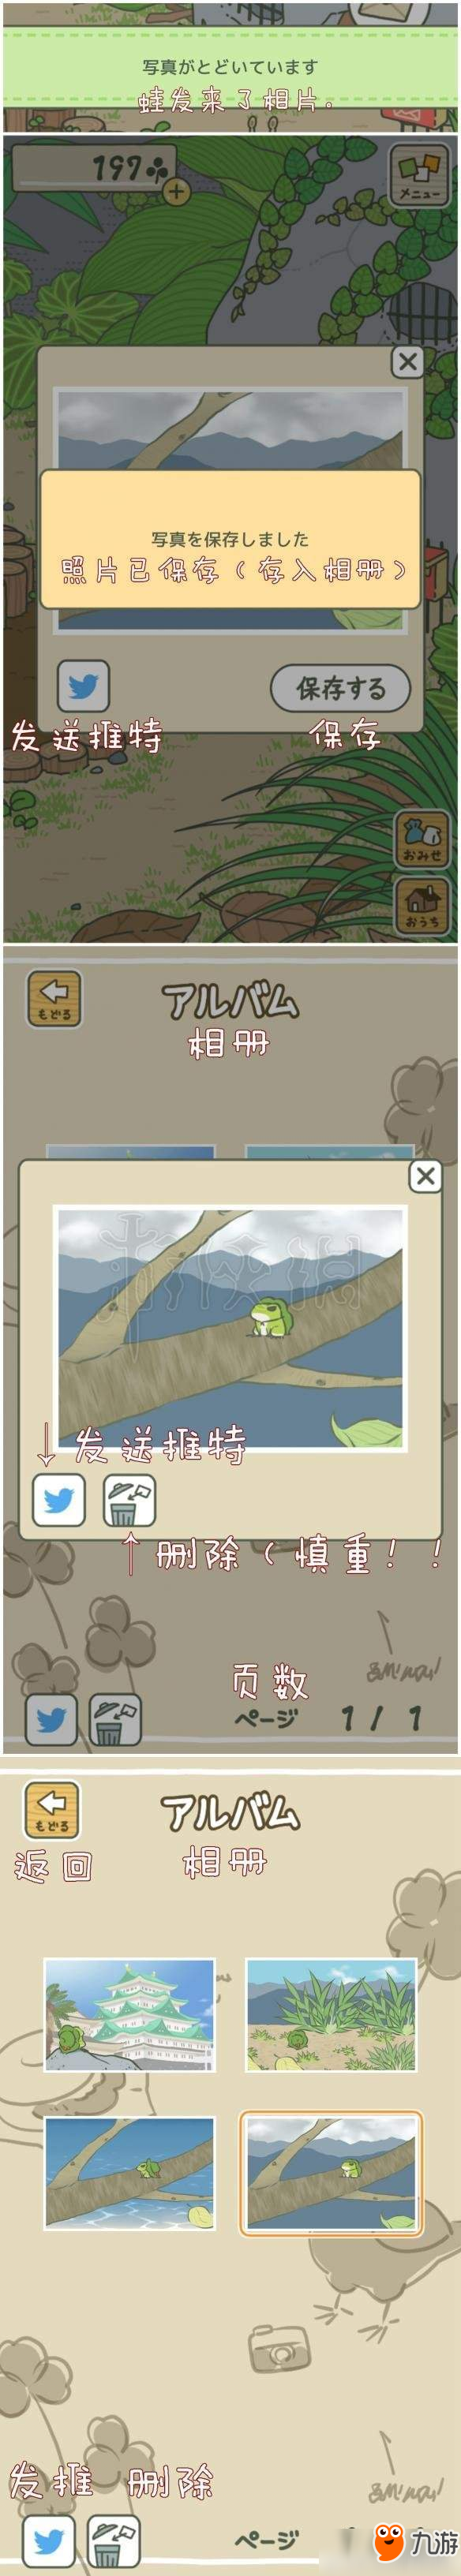 《旅行青蛙》中文图文攻略教程分享